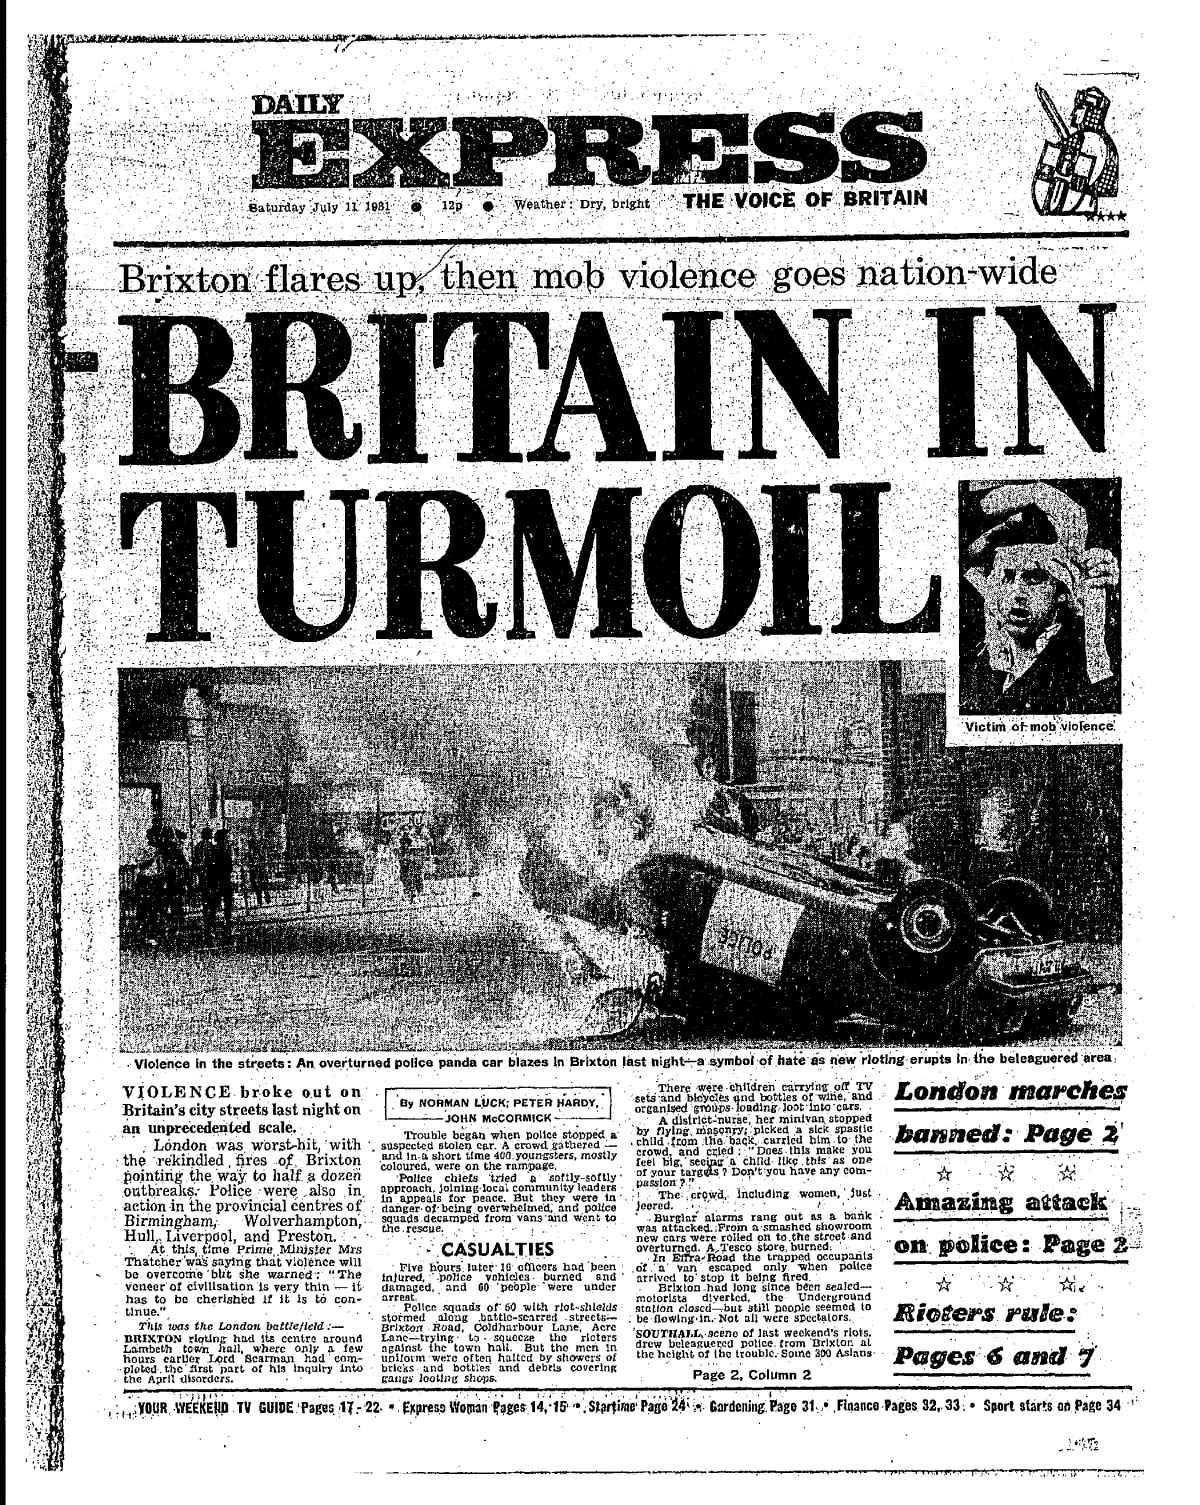 In den frühen 1980er Jahren kam es in Brixton zu schrecklichen Unruhen...